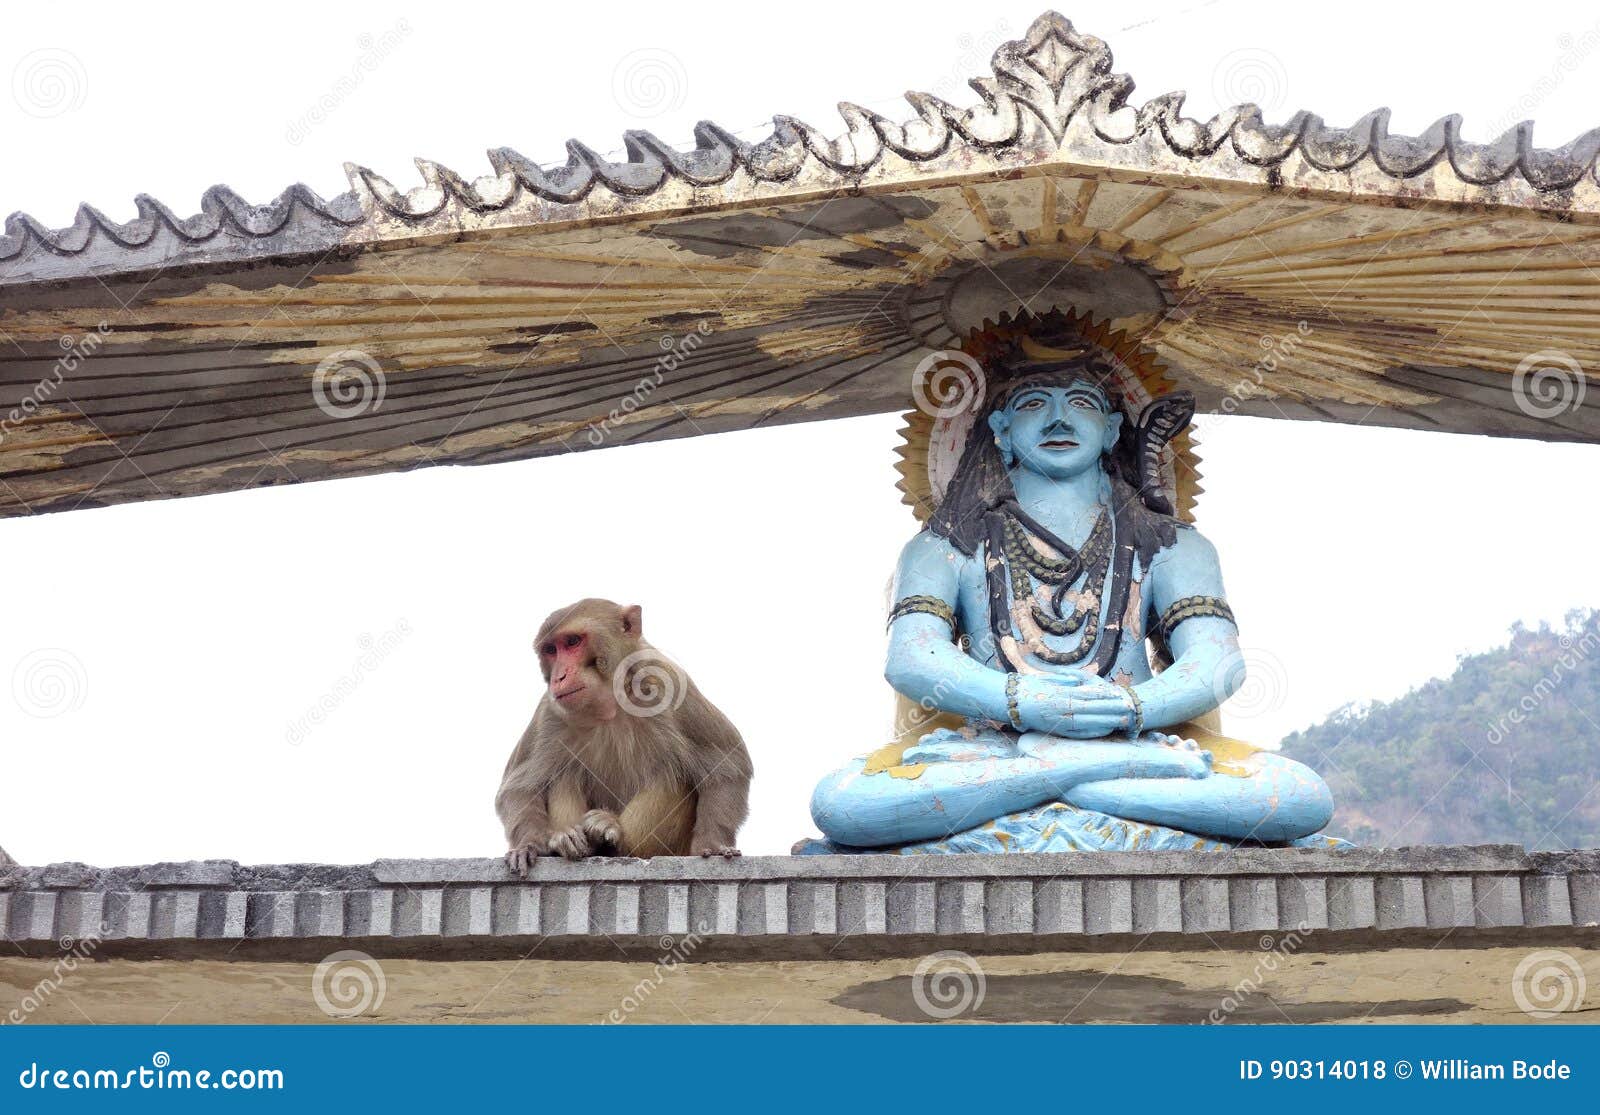 Shiva and Hanuman stock photo. Image of meditating, large - 90314018